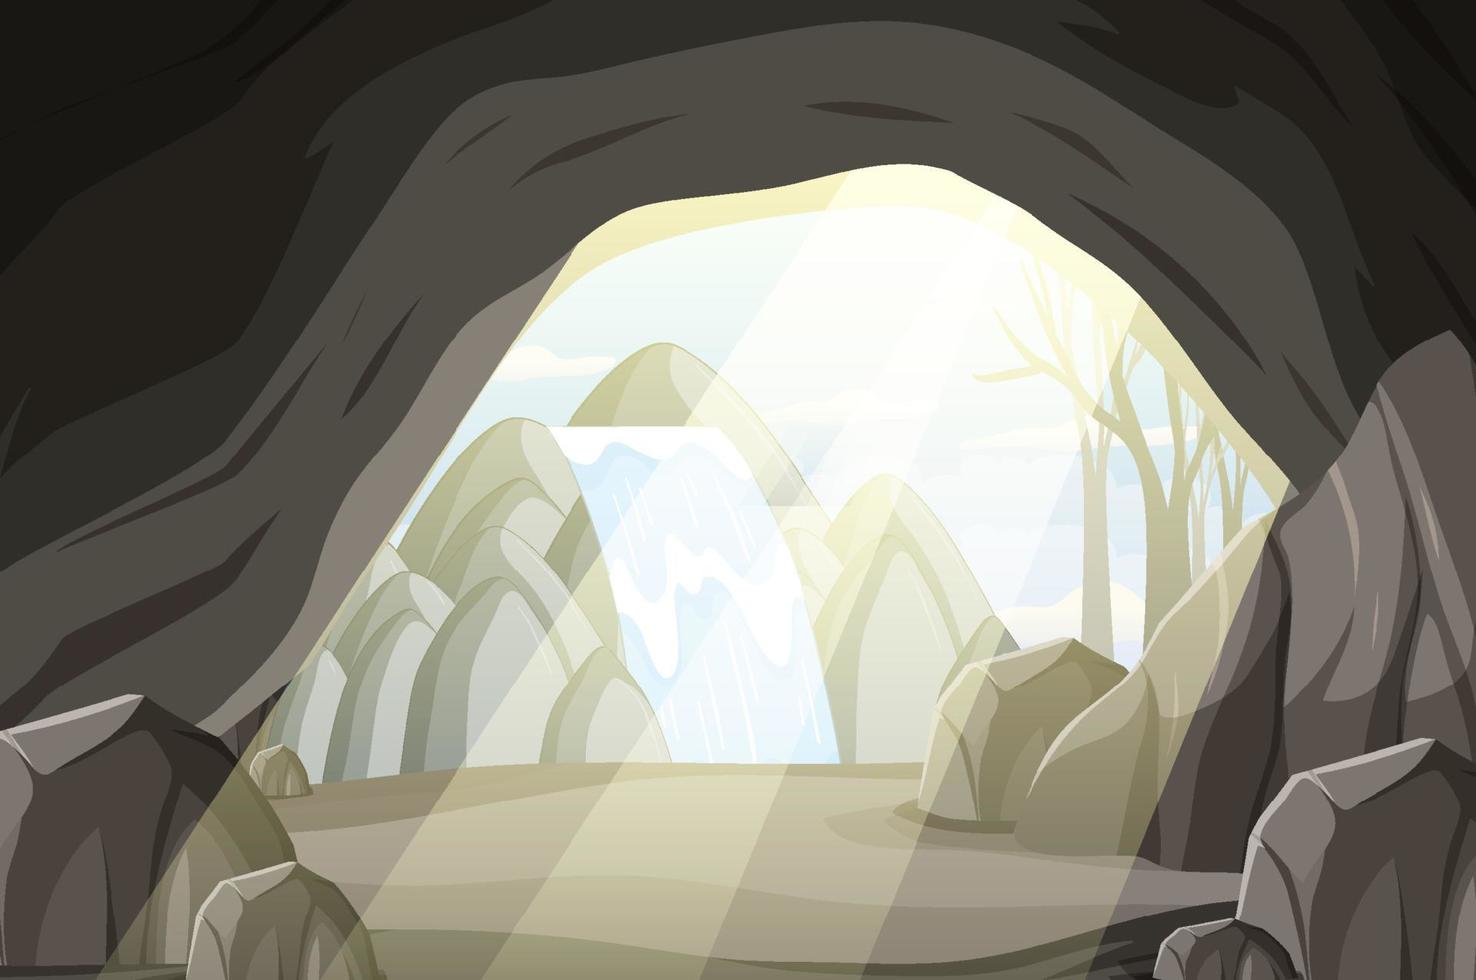 dentro del paisaje de la cueva en estilo de dibujos animados vector